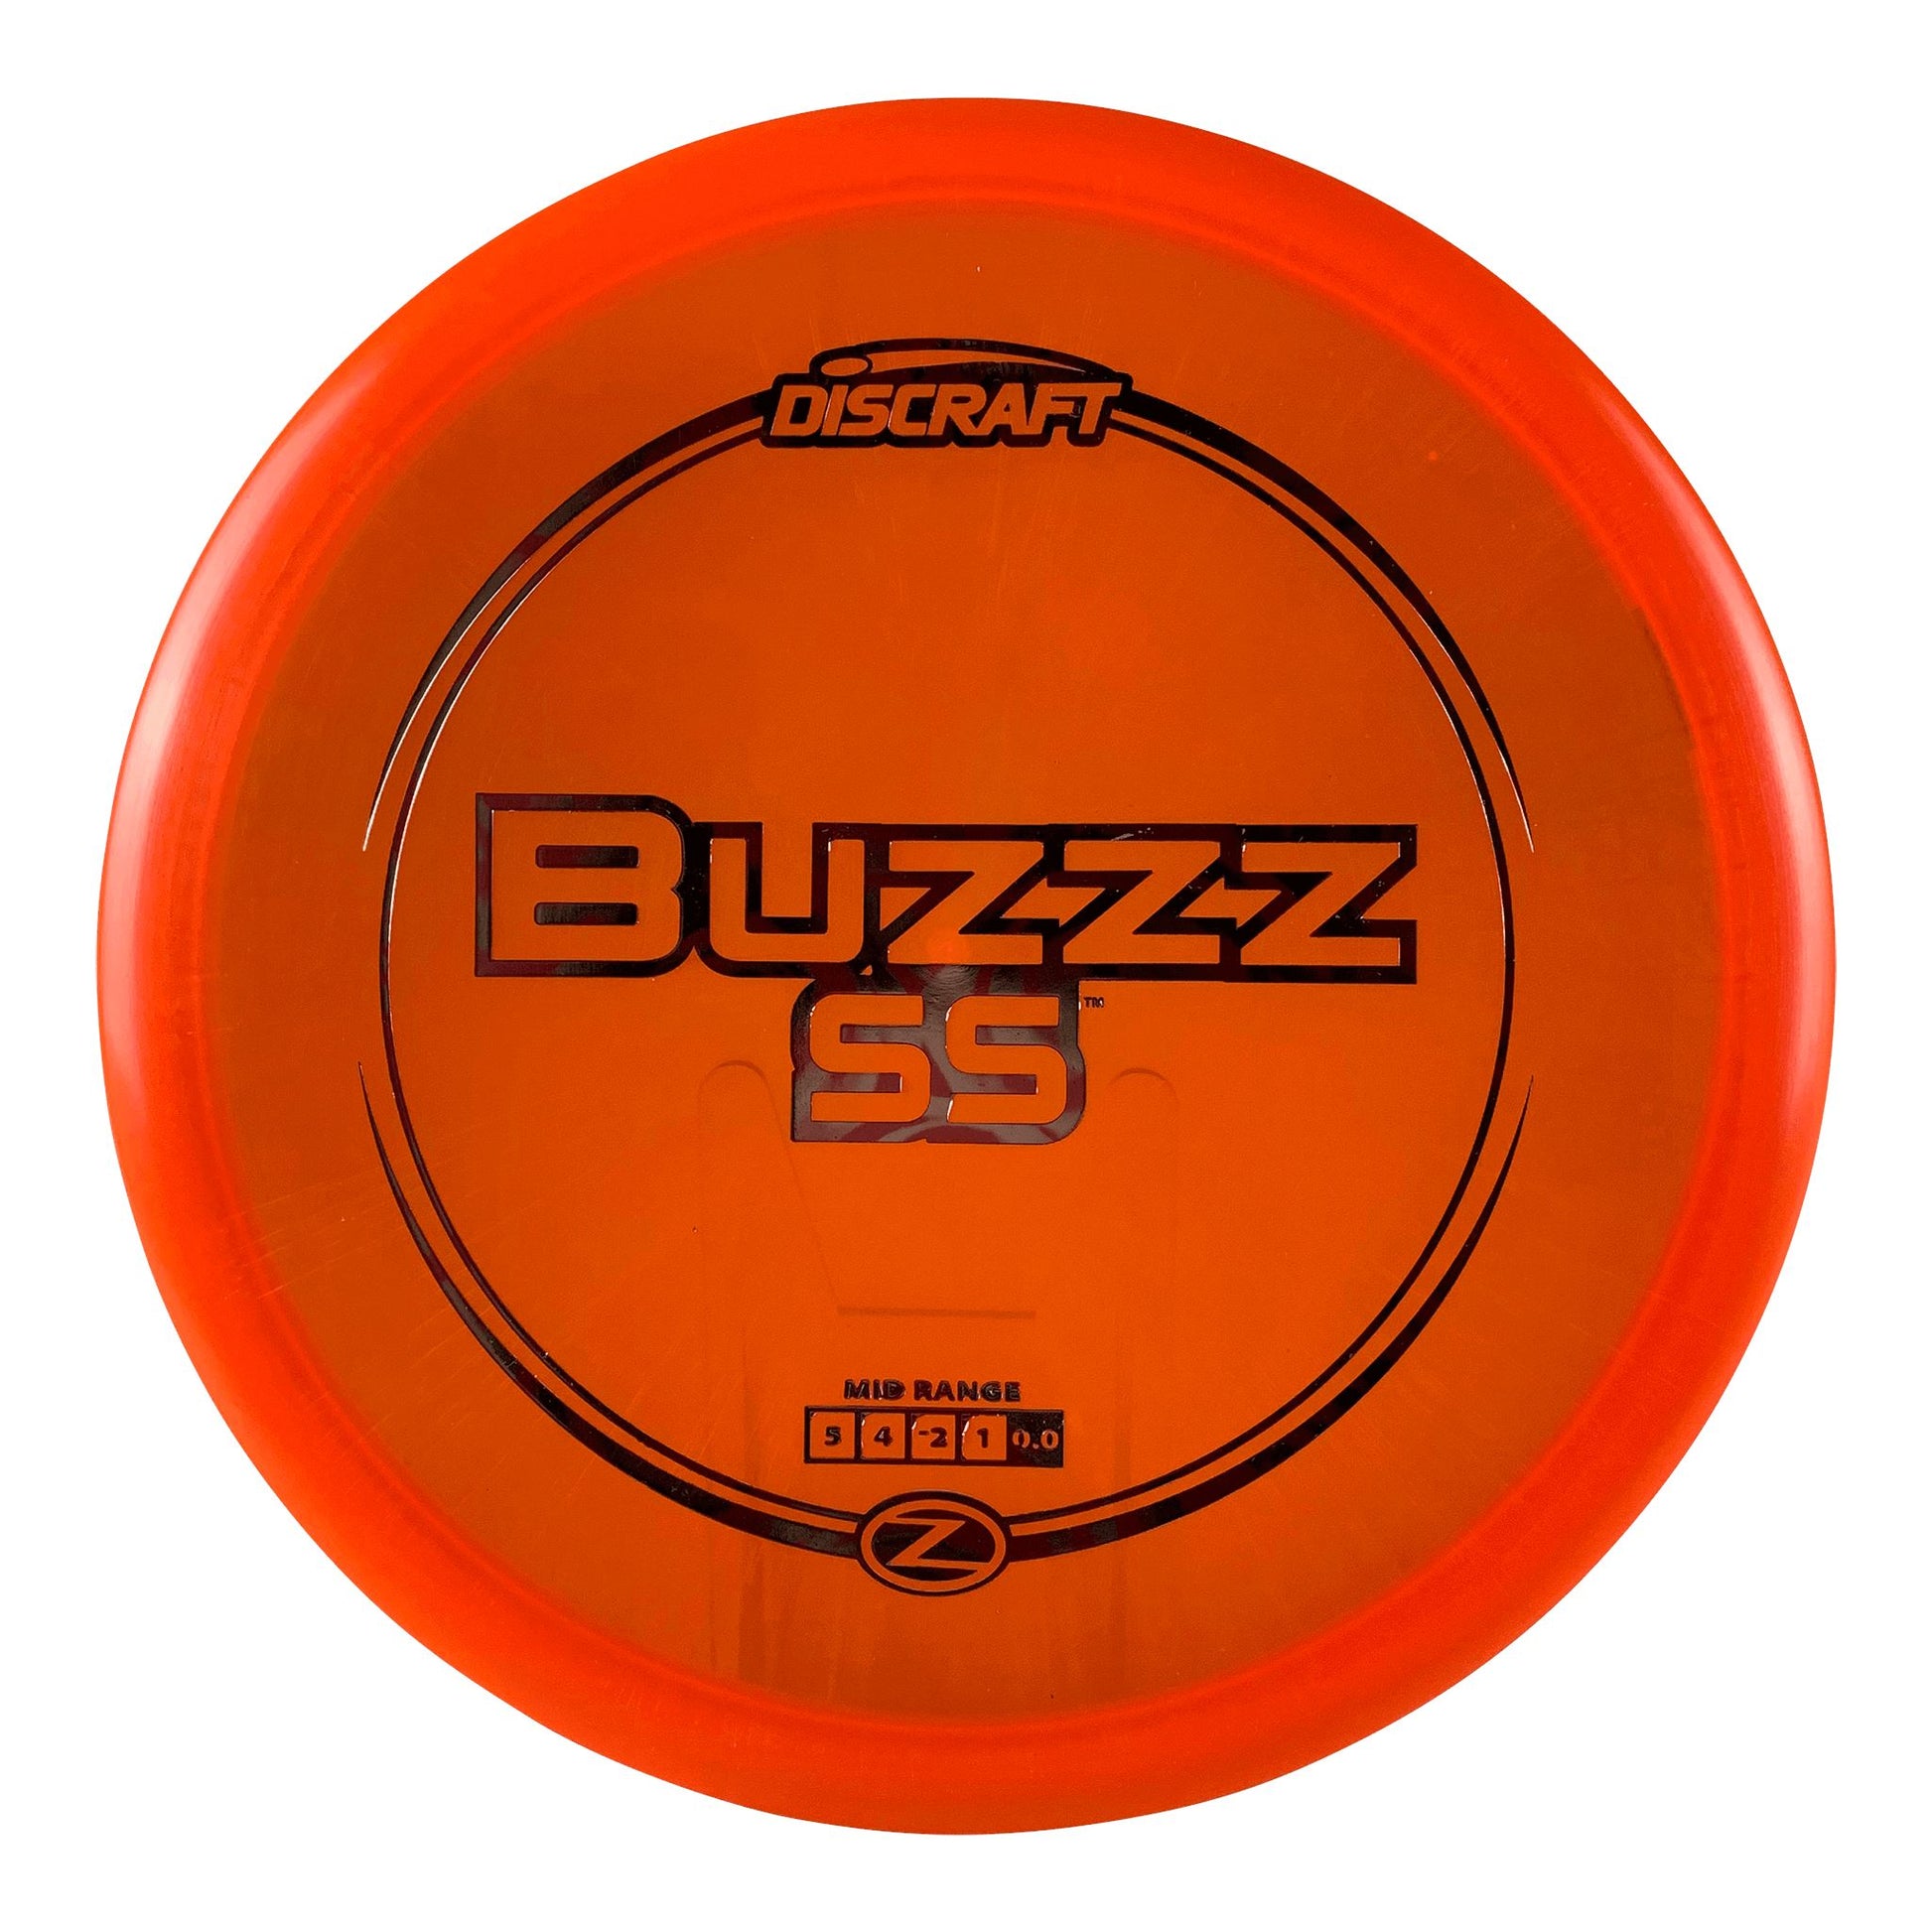 Z Buzzz SS Disc Discraft orange 179 